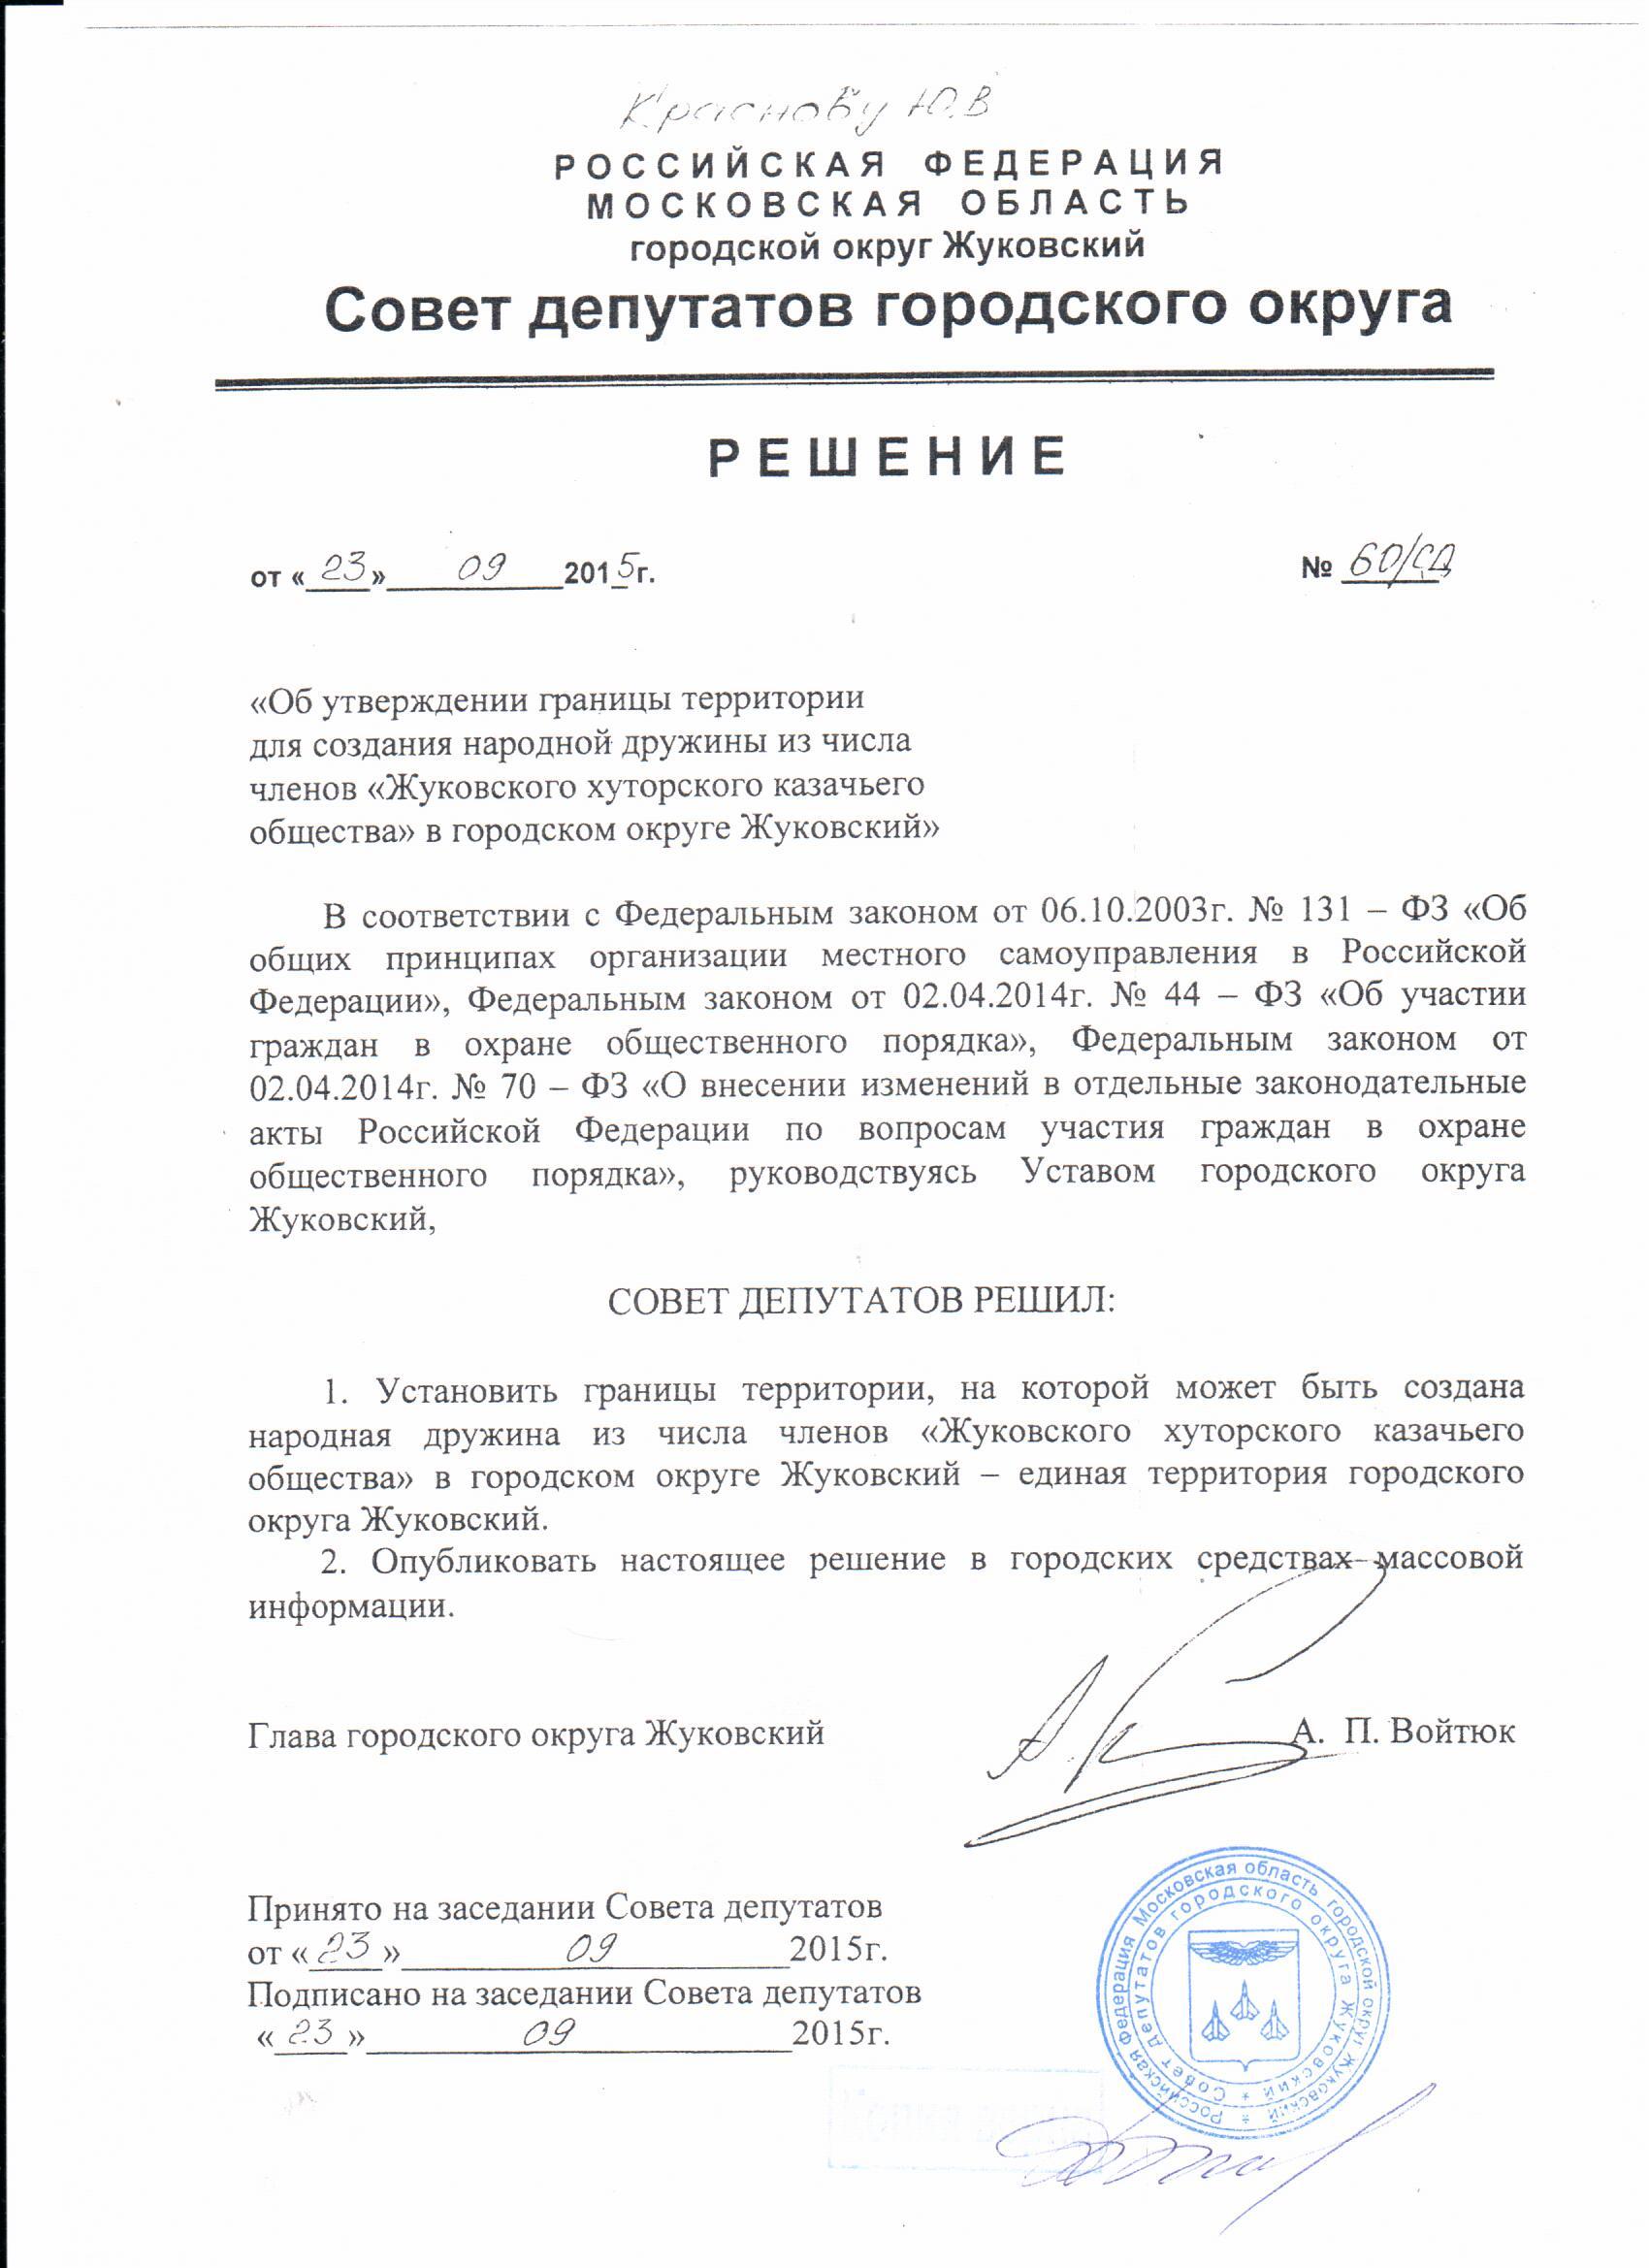 Решение совета депутатов г. Жуковского в отношении казачьей дружины.